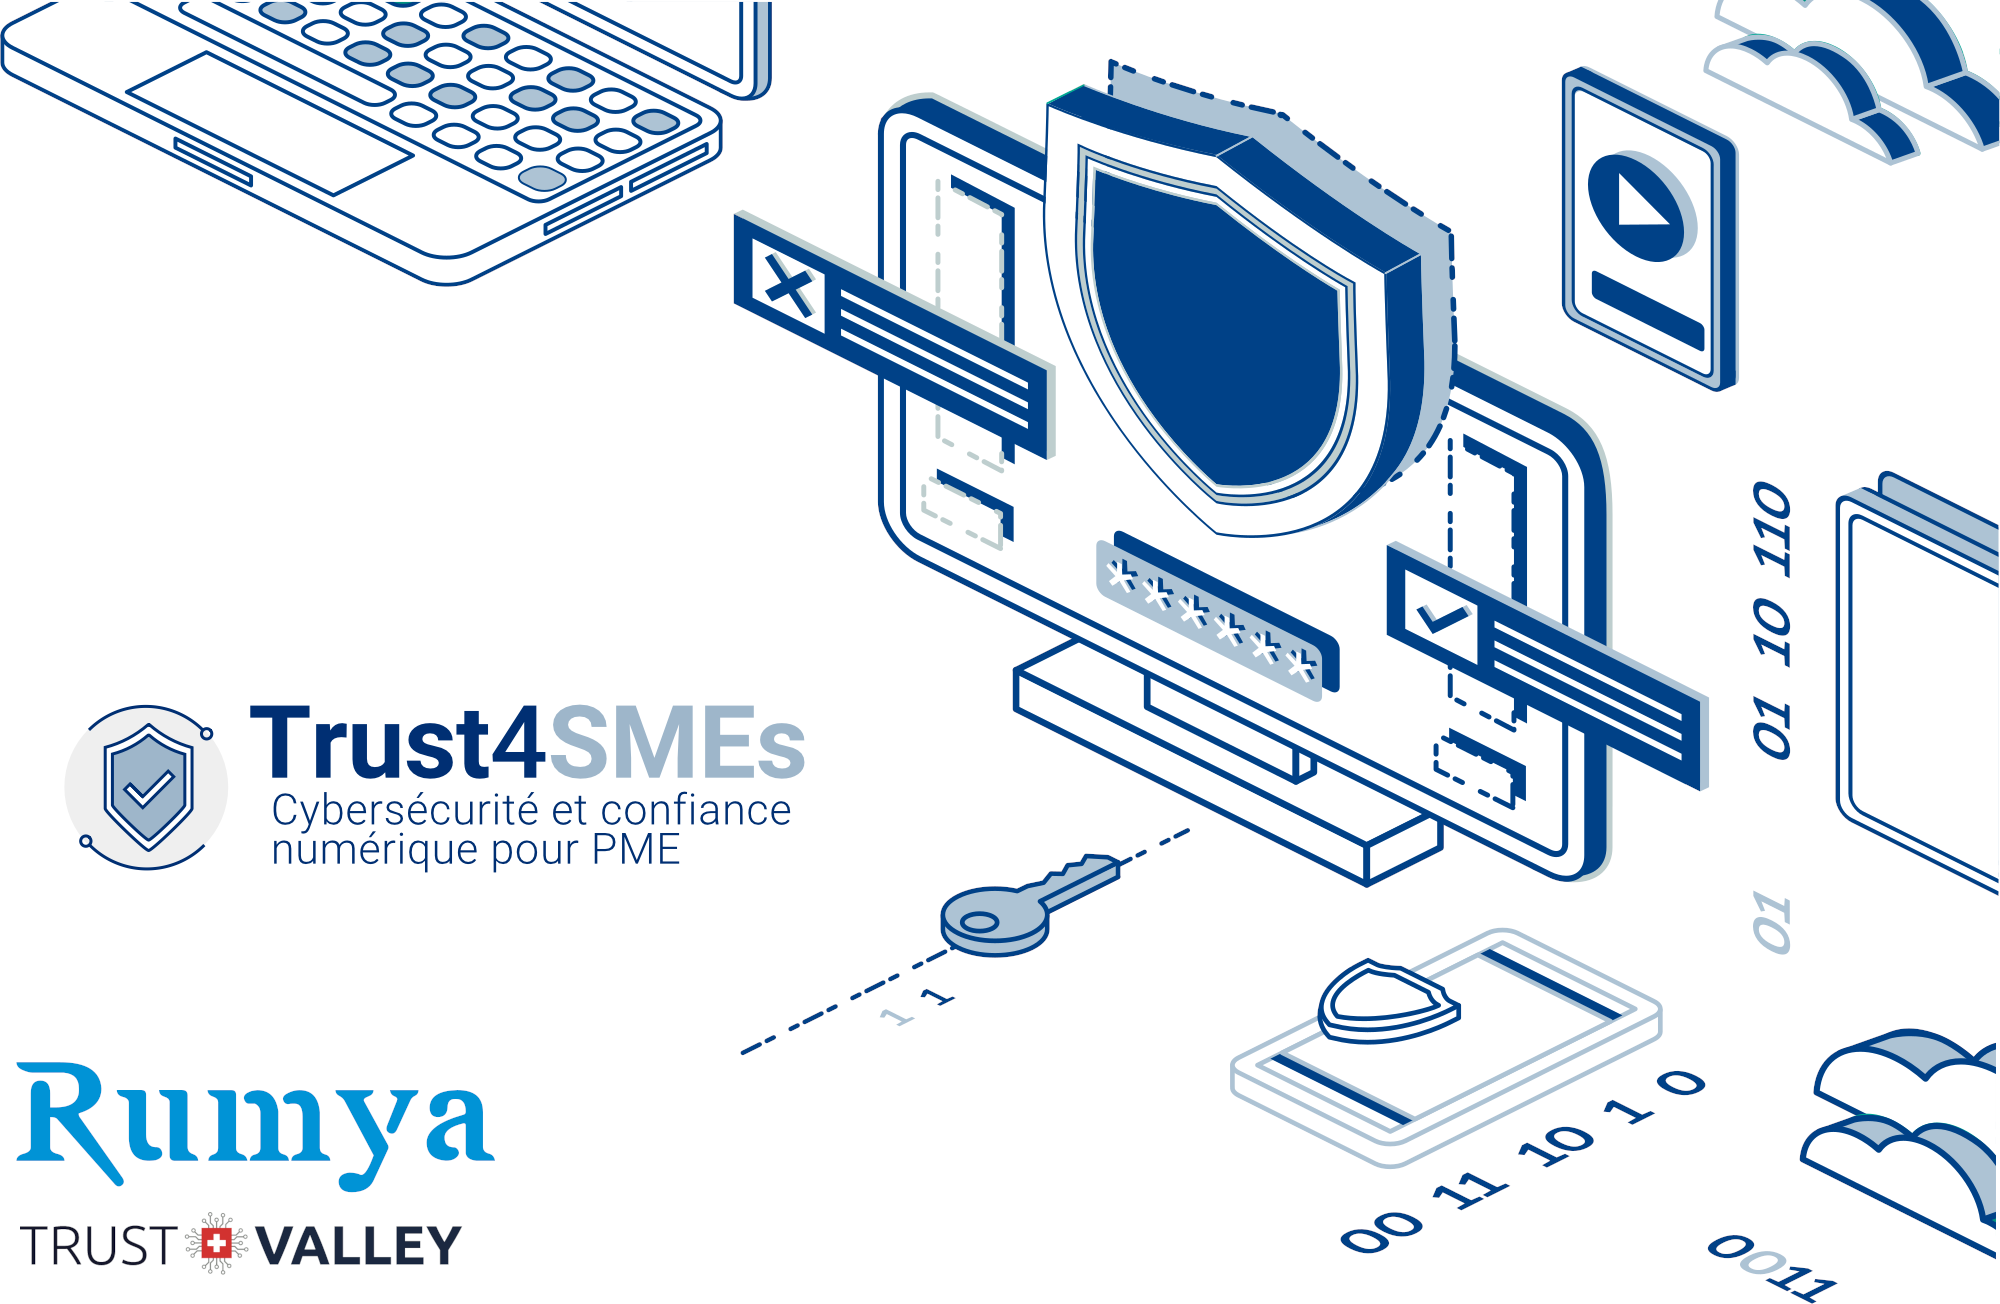 Rumya rejoint Trust4SMEs pour un partenariat au service des PME.